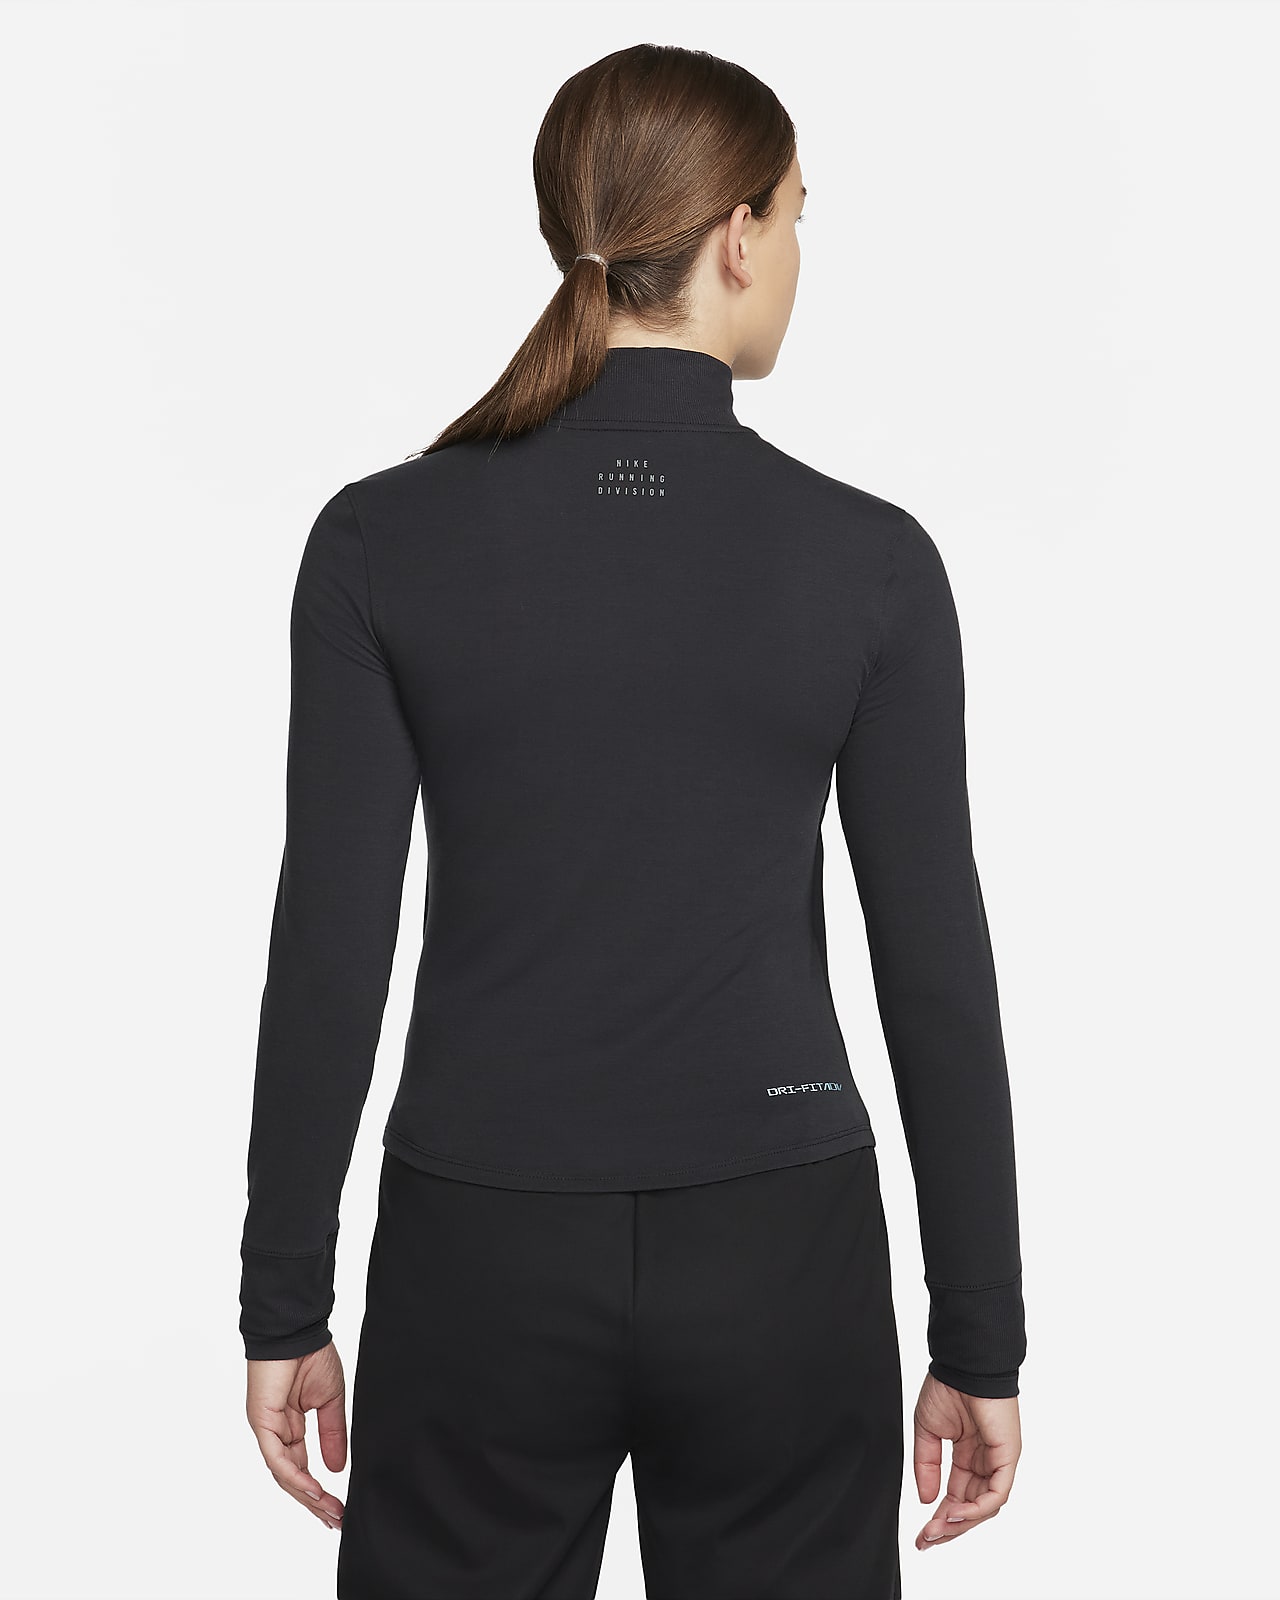 Jogging 7/8 femme Nike Dri-Fit FLC - Textile - Yoga - Entretien physique